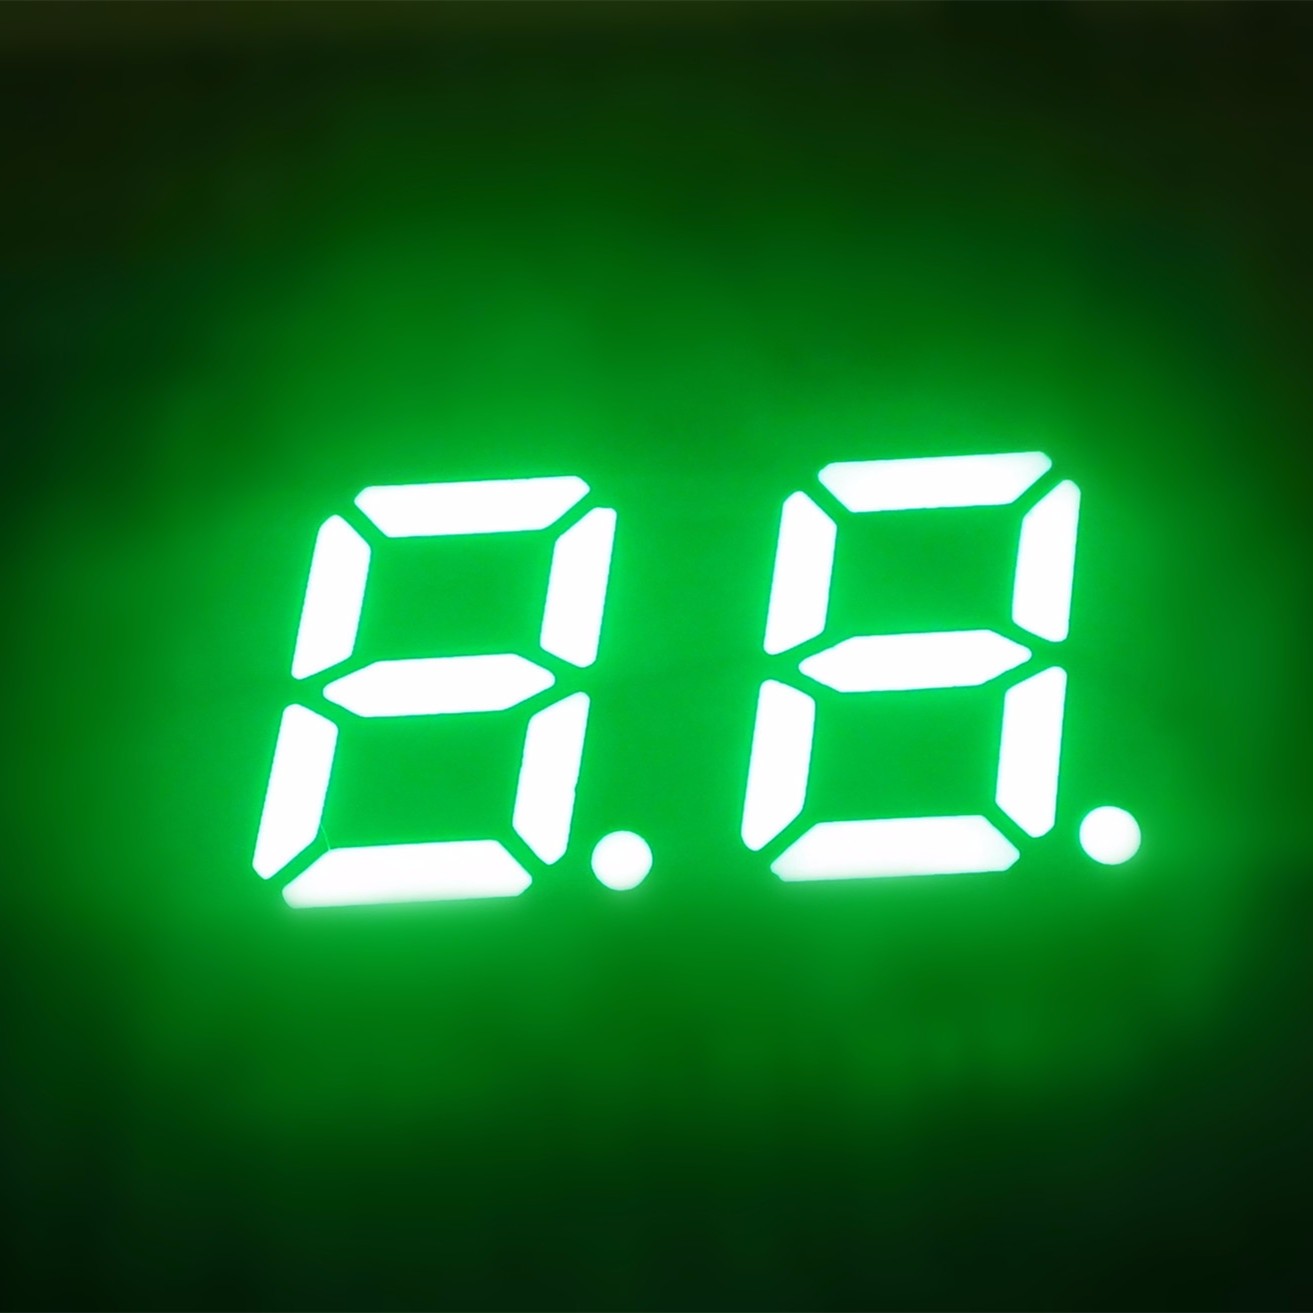 Comprar Pantalla LED de 2 dígitos y 7 segmentos, Pantalla LED de 2 dígitos y 7 segmentos Precios, Pantalla LED de 2 dígitos y 7 segmentos Marcas, Pantalla LED de 2 dígitos y 7 segmentos Fabricante, Pantalla LED de 2 dígitos y 7 segmentos Citas, Pantalla LED de 2 dígitos y 7 segmentos Empresa.